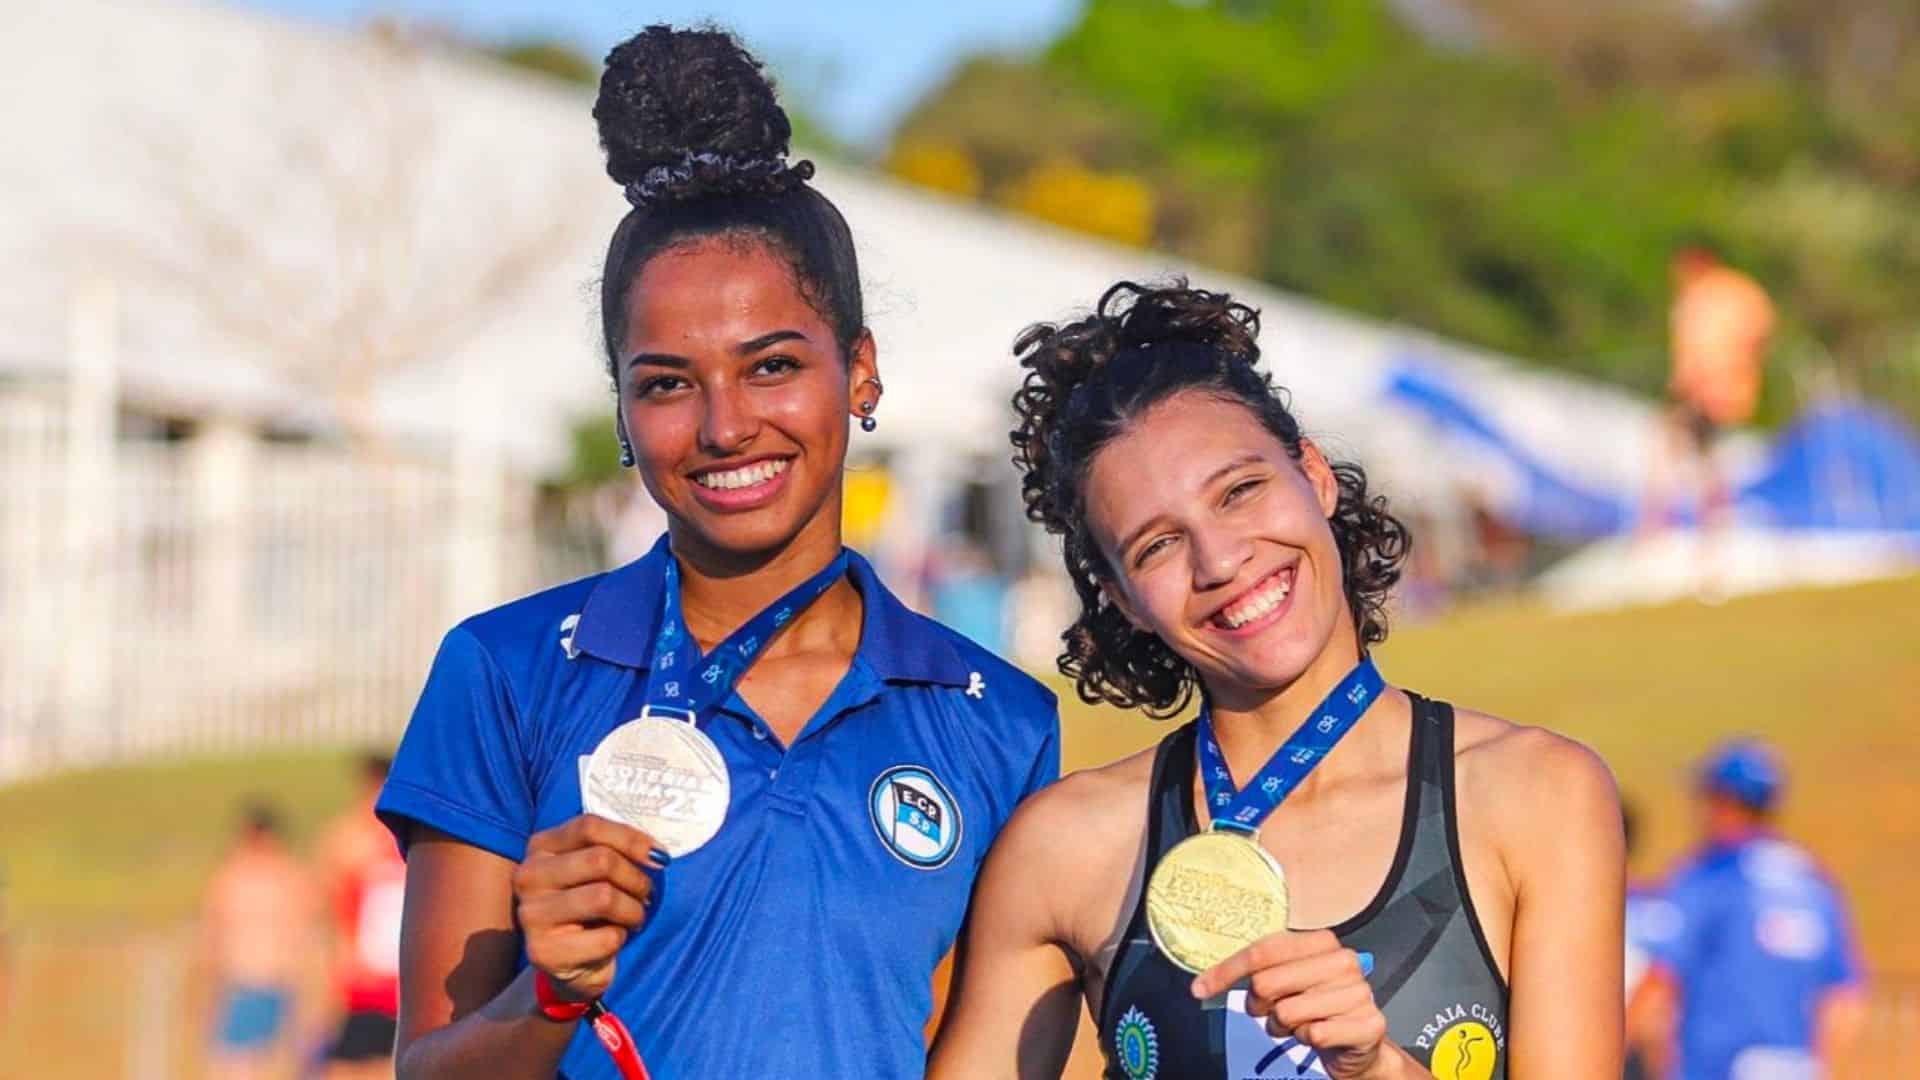 Vôlei feminino de Bragança Paulista conquista medalha de bronze